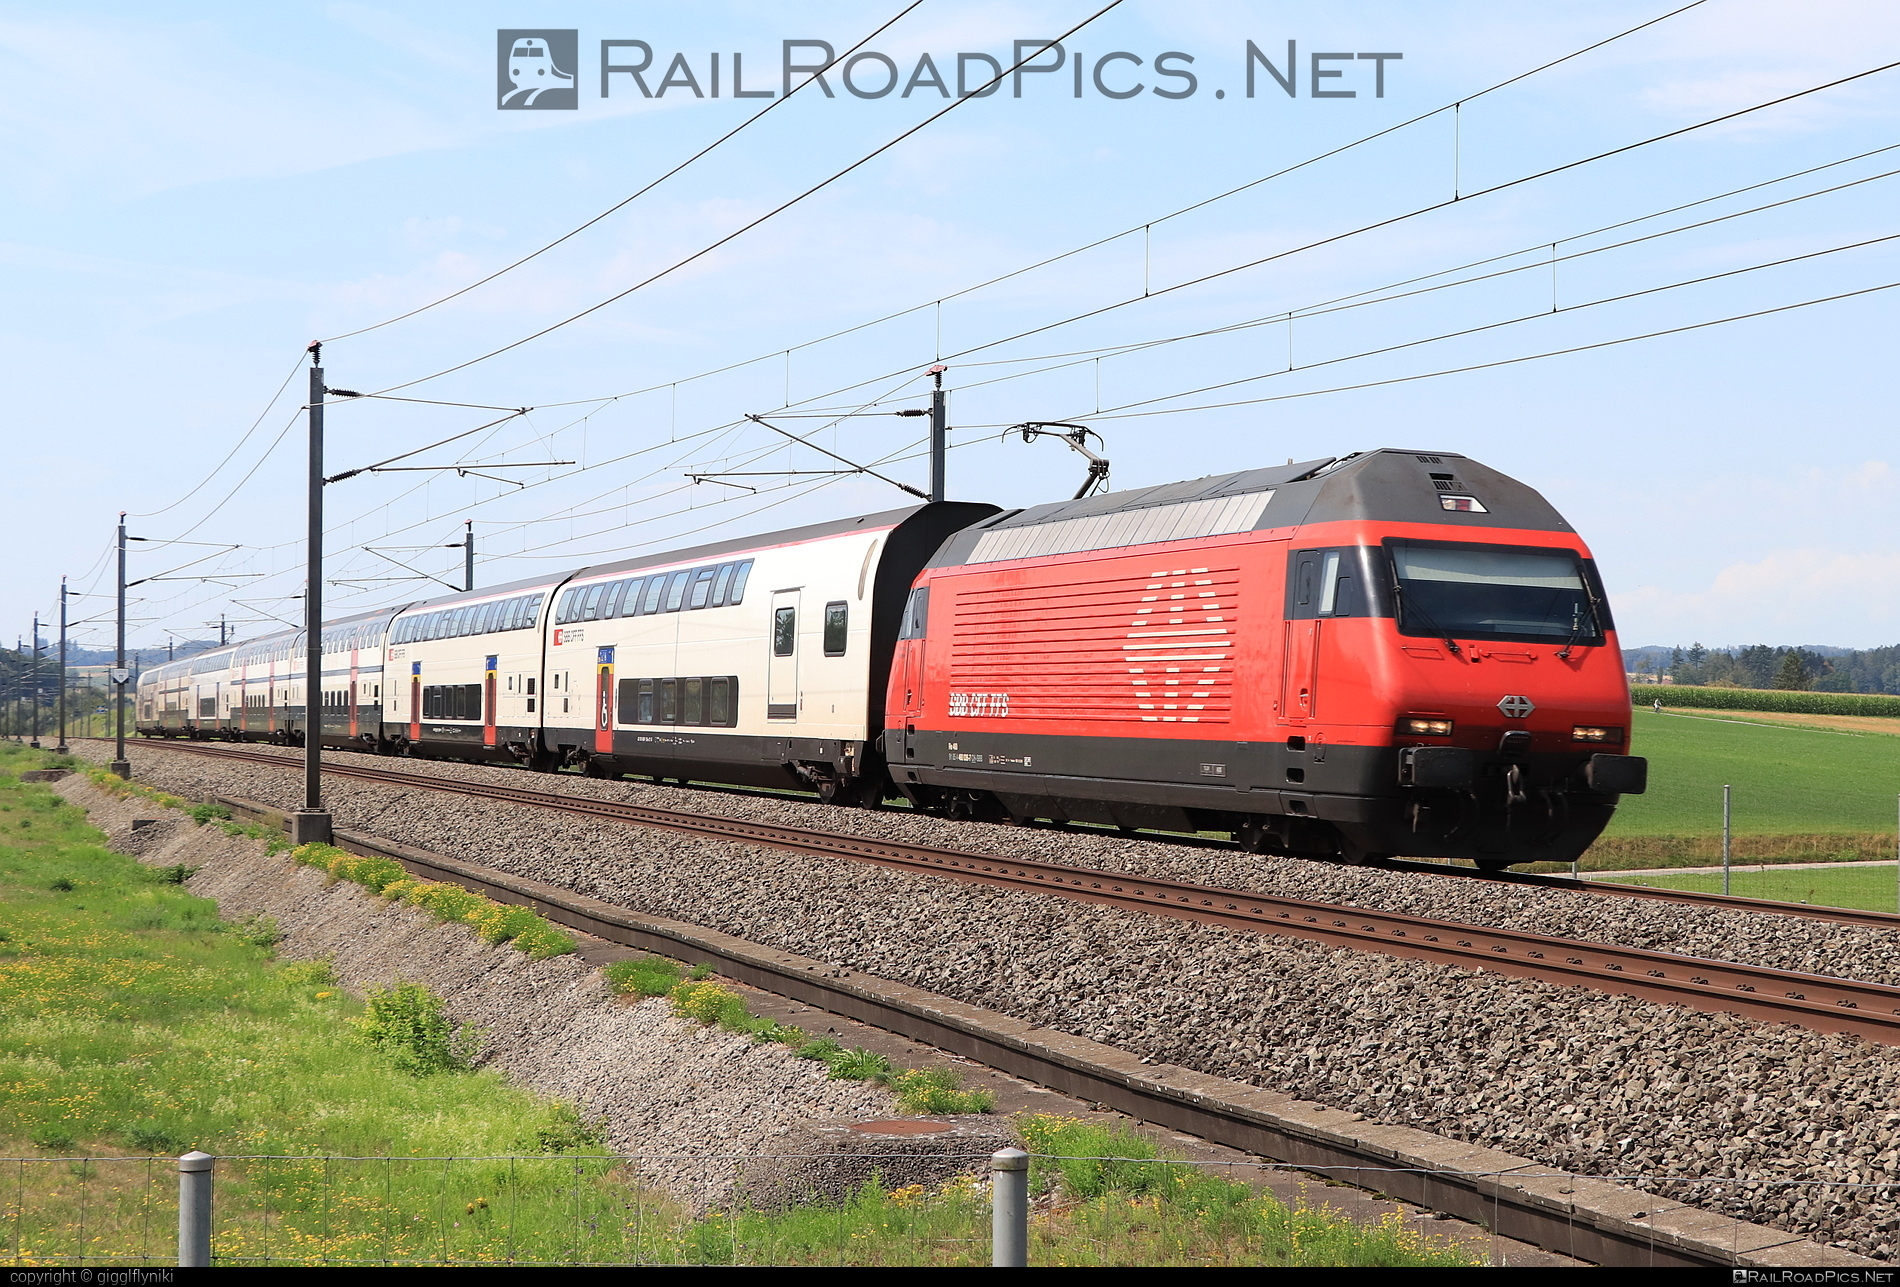 SBB Class Re 460 - 460 036 operated by Schweizerische Bundesbahnen SBB #CFF #CheminsDeFerFederauxSuisses #FFS #FerrovieFederaliSvizzere #SBB #SchweizerischeBundesbahnen #lok2000 #sbbClassRe460 #sbbRe460